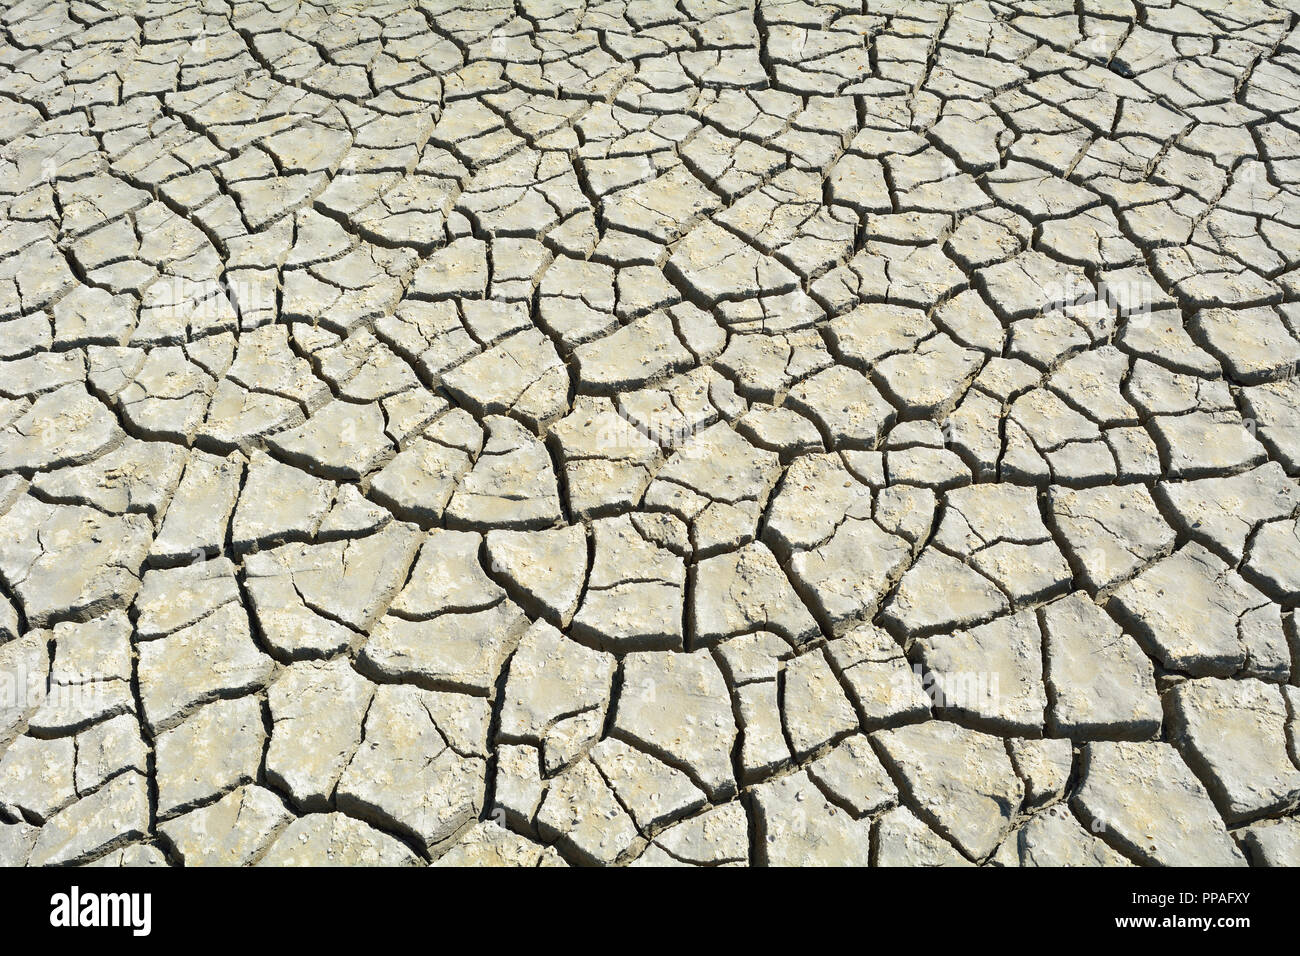 Cracked Dry Ground, Saintes-Maries-de-la-Mer, Carmague, Provence Alpes Cote d Azur, Bouches du Rhone, France Stock Photo